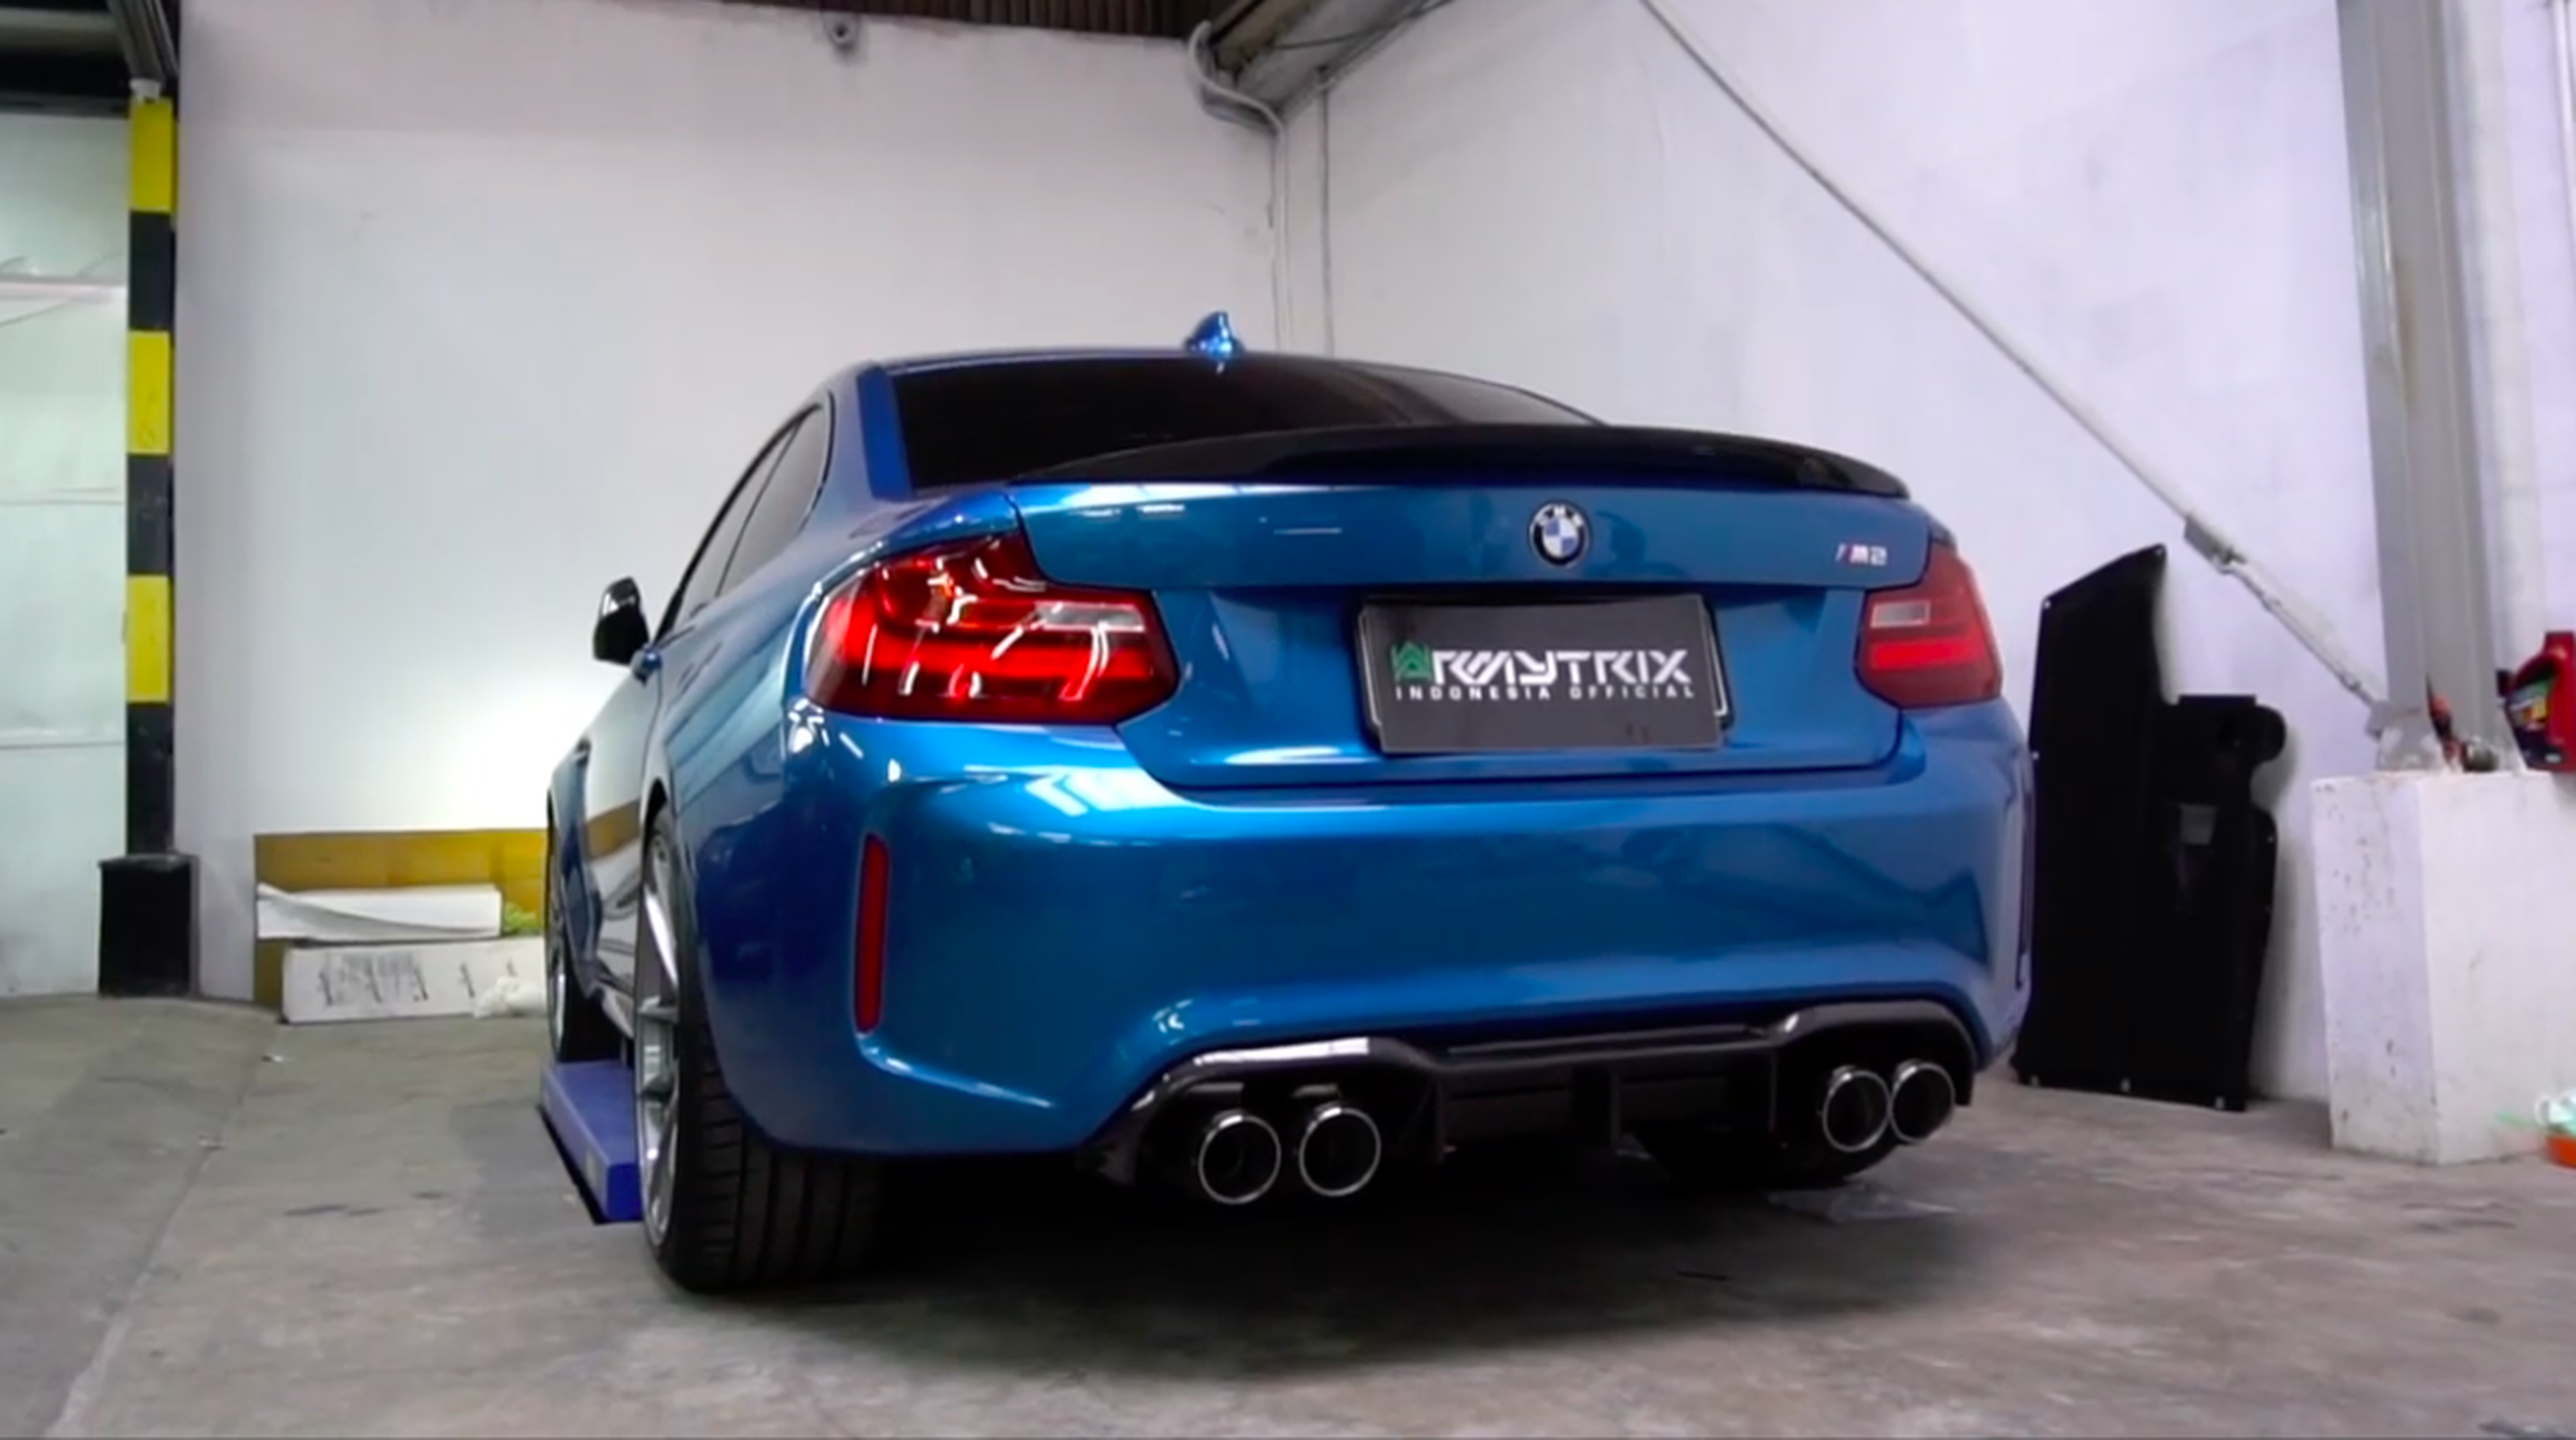 VÍDEO: Mira cómo ruge este BMW M2 con escapes modificados, ¡menuda sinfonía!